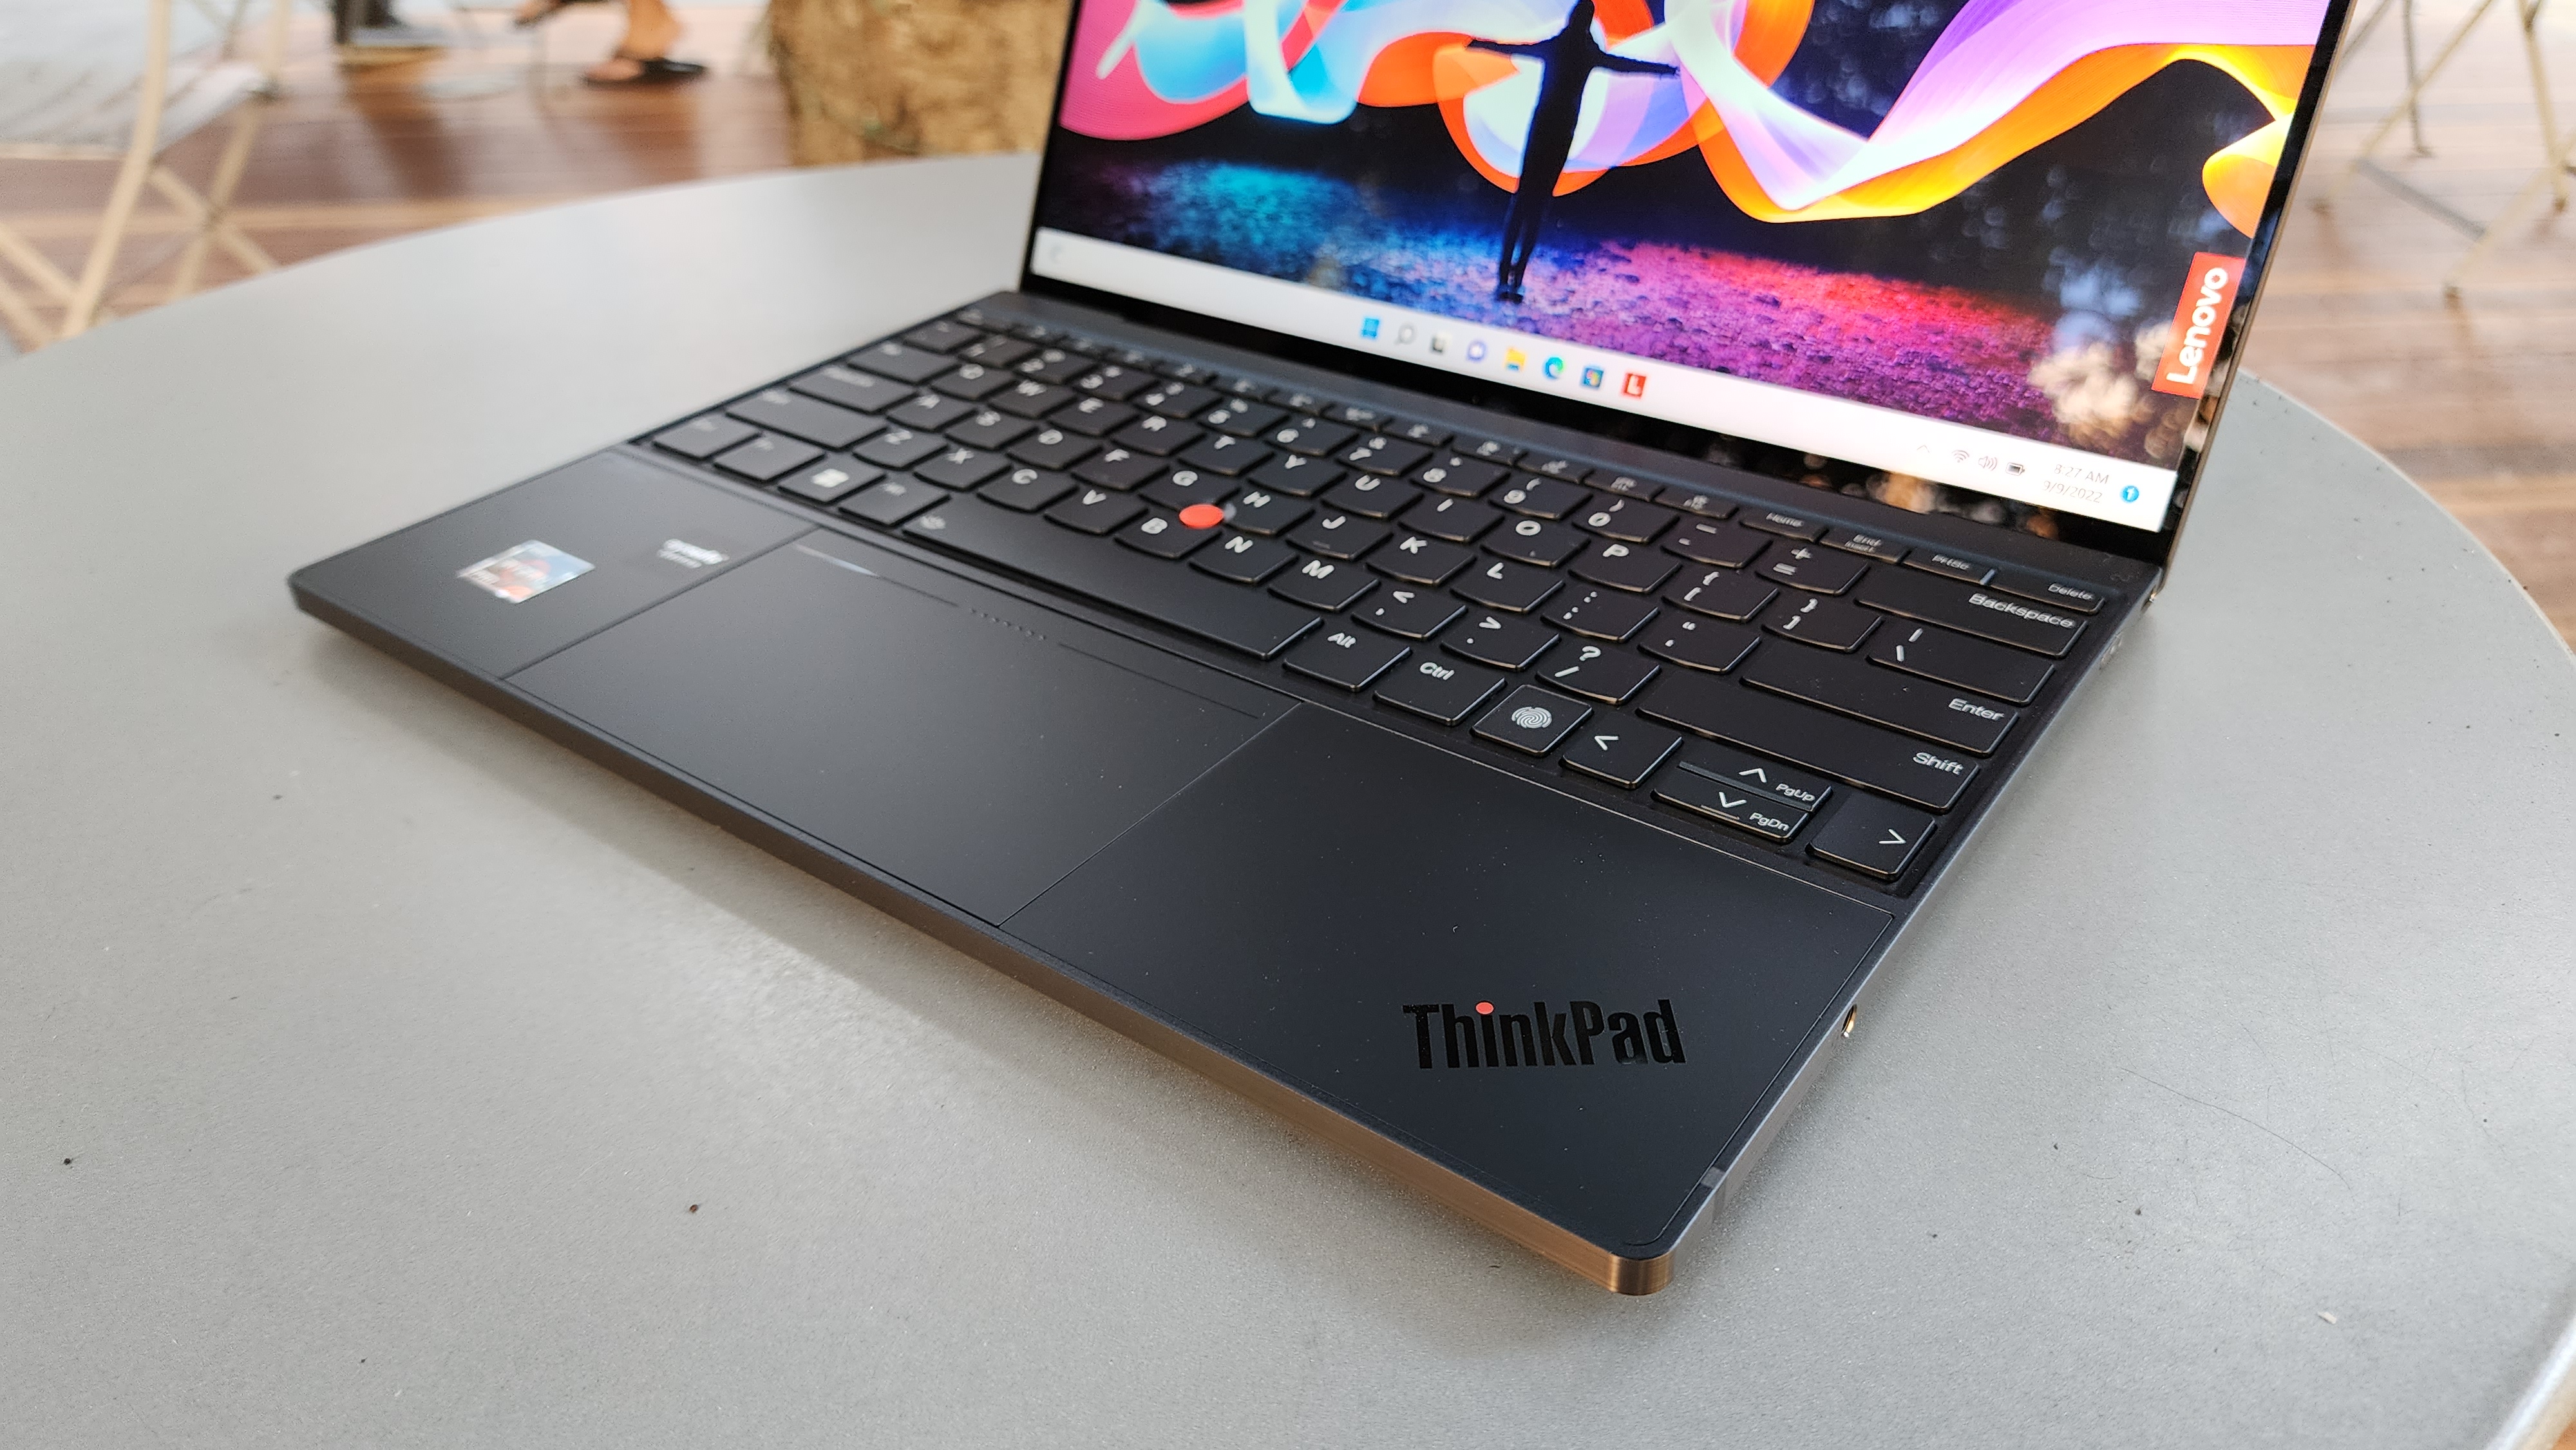 Lenovo ThinkPad Z13 keyboard